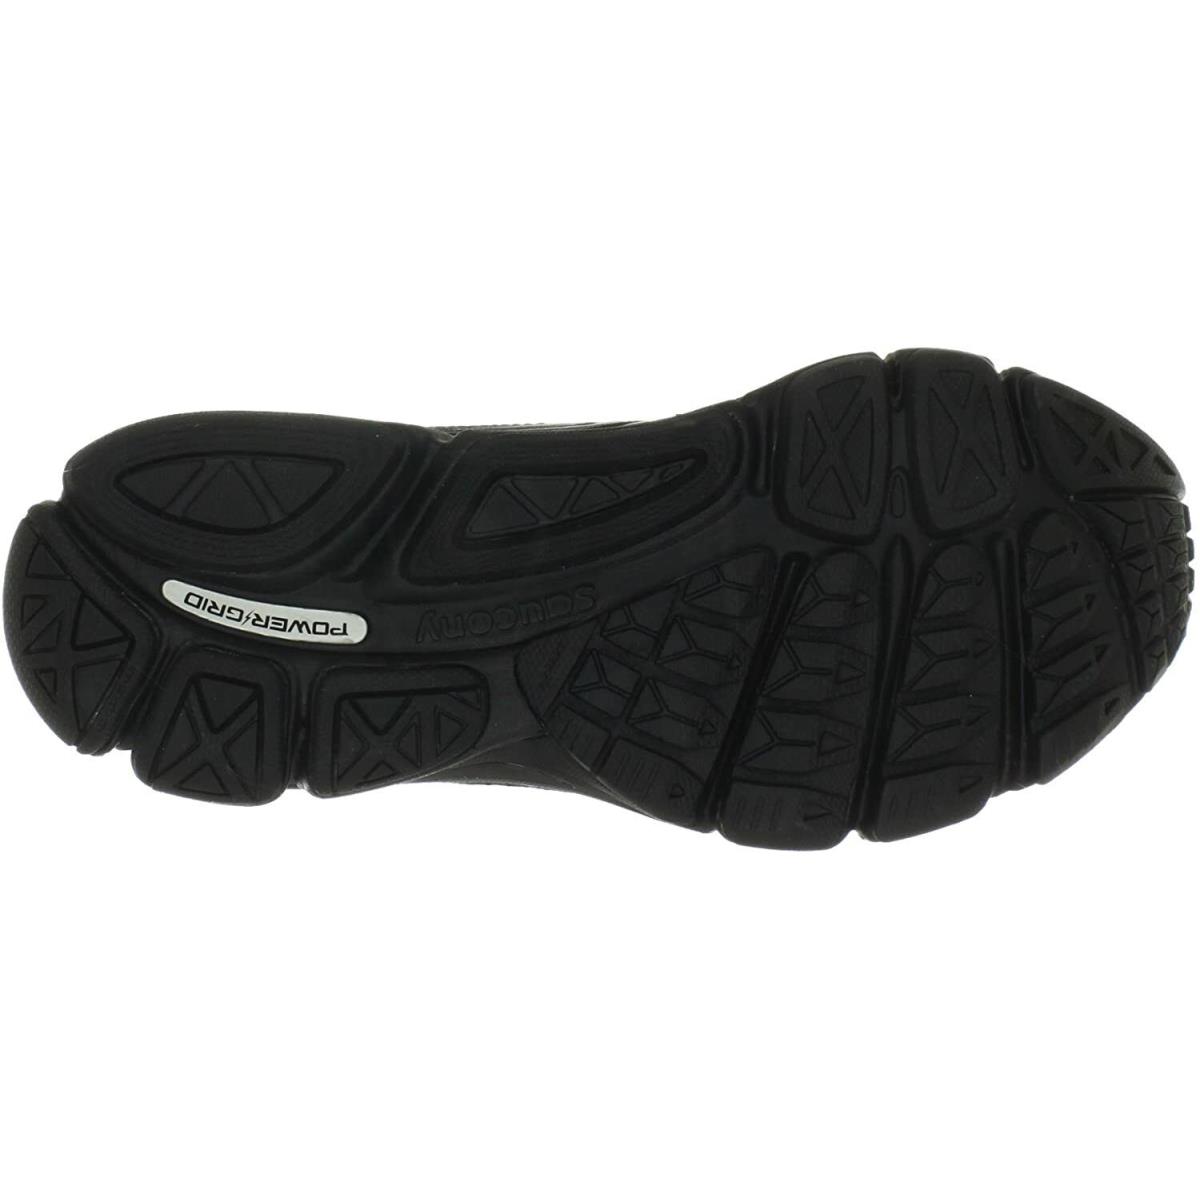 Saucony shoes  - Black 2